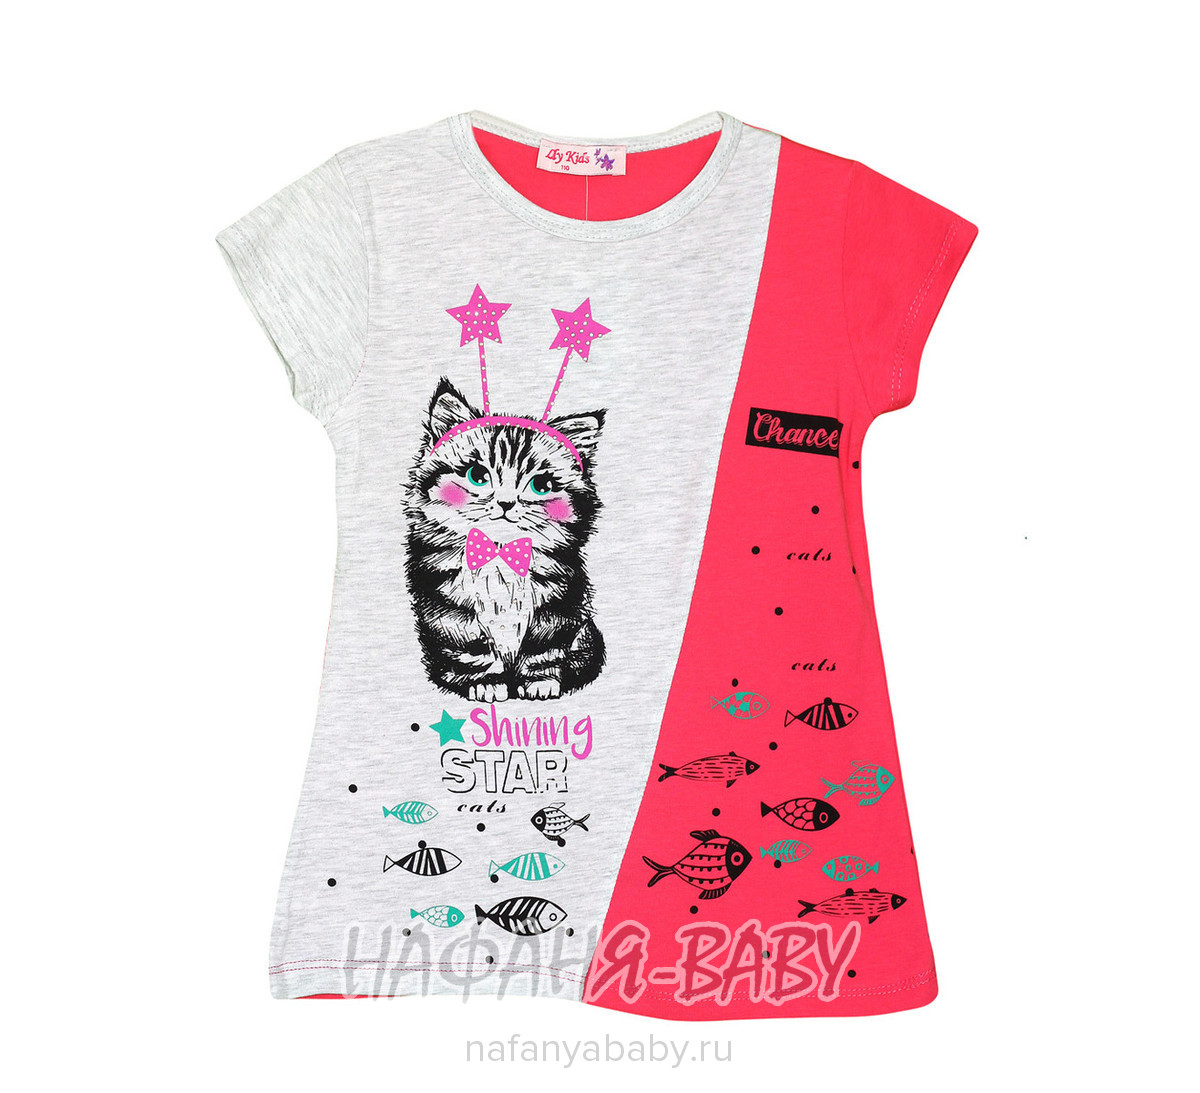 Детская футболка LILY Kids арт: 3667, 5-9 лет, оптом Турция